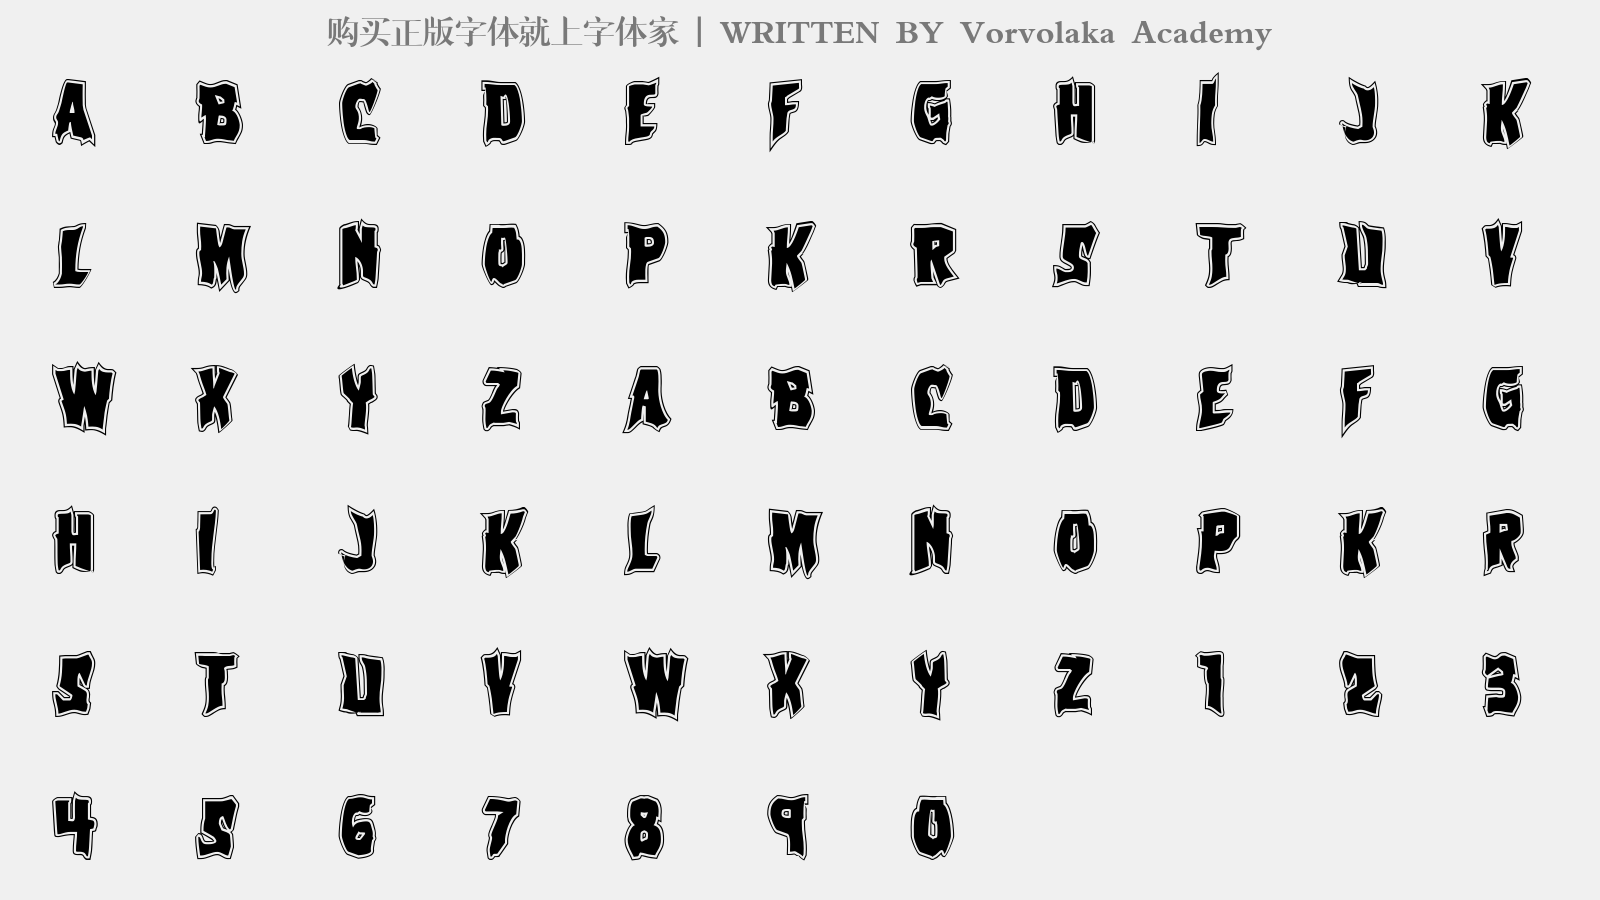 Vorvolaka Academy - 大写字母/小写字母/数字